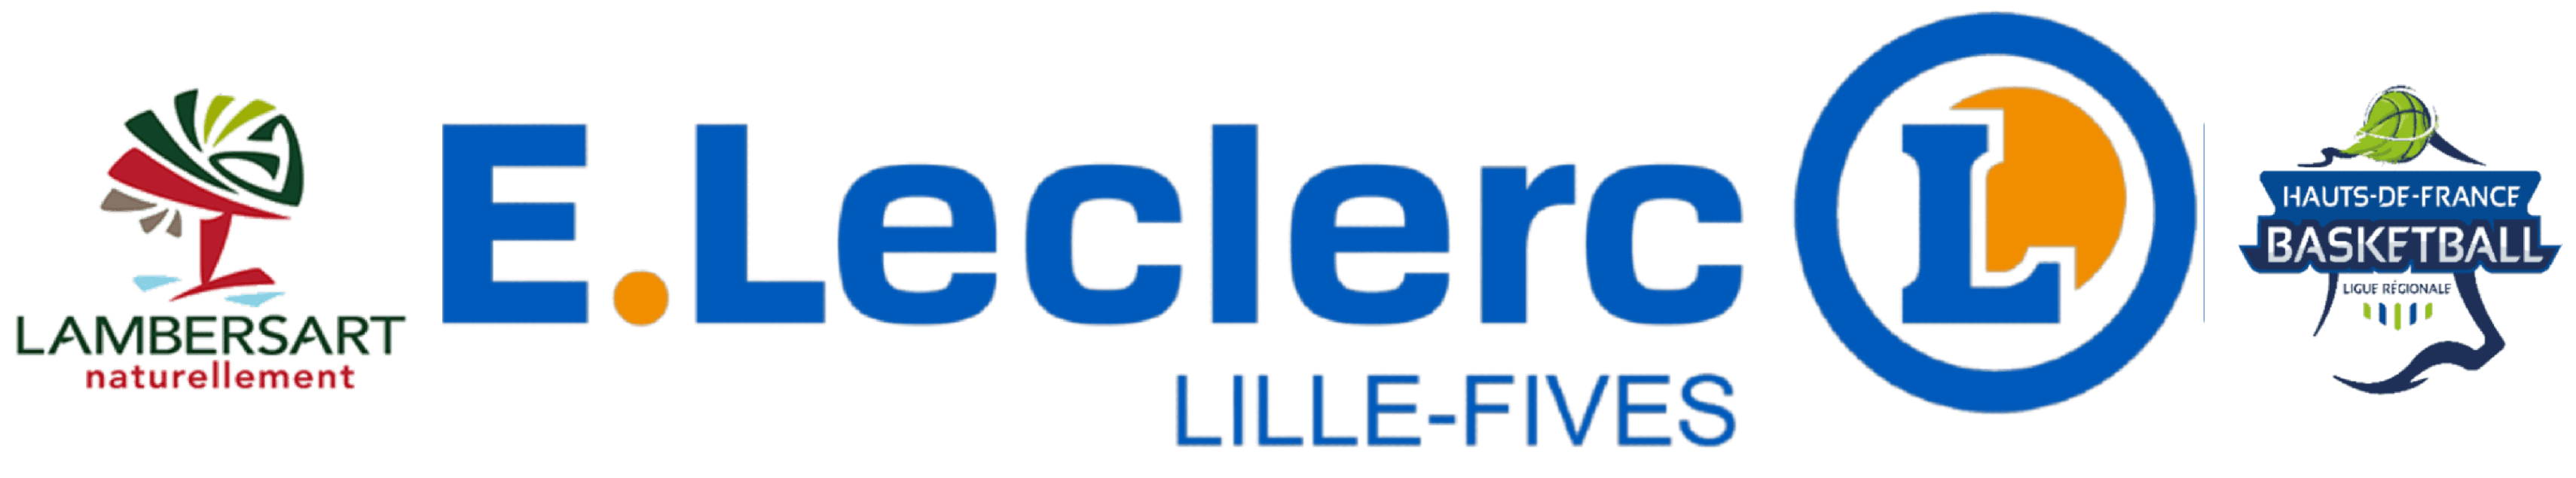 https://lblm.fr/wp-content/uploads/2021/10/logo_LLL_v2.png